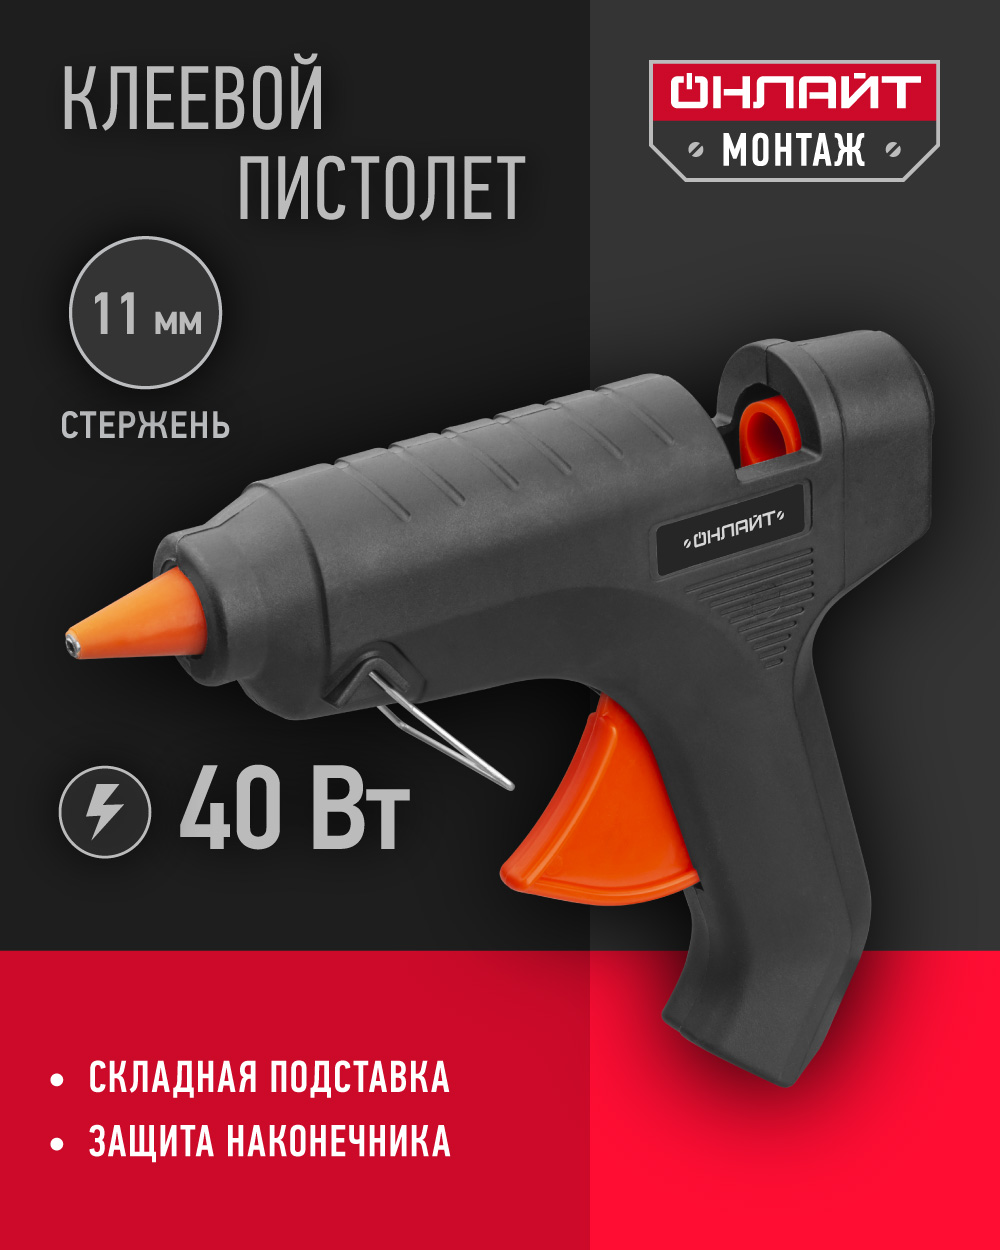 Клеевой пистолет профессиональный ОНЛАЙТ 90 085, 40 Вт, 11 мм